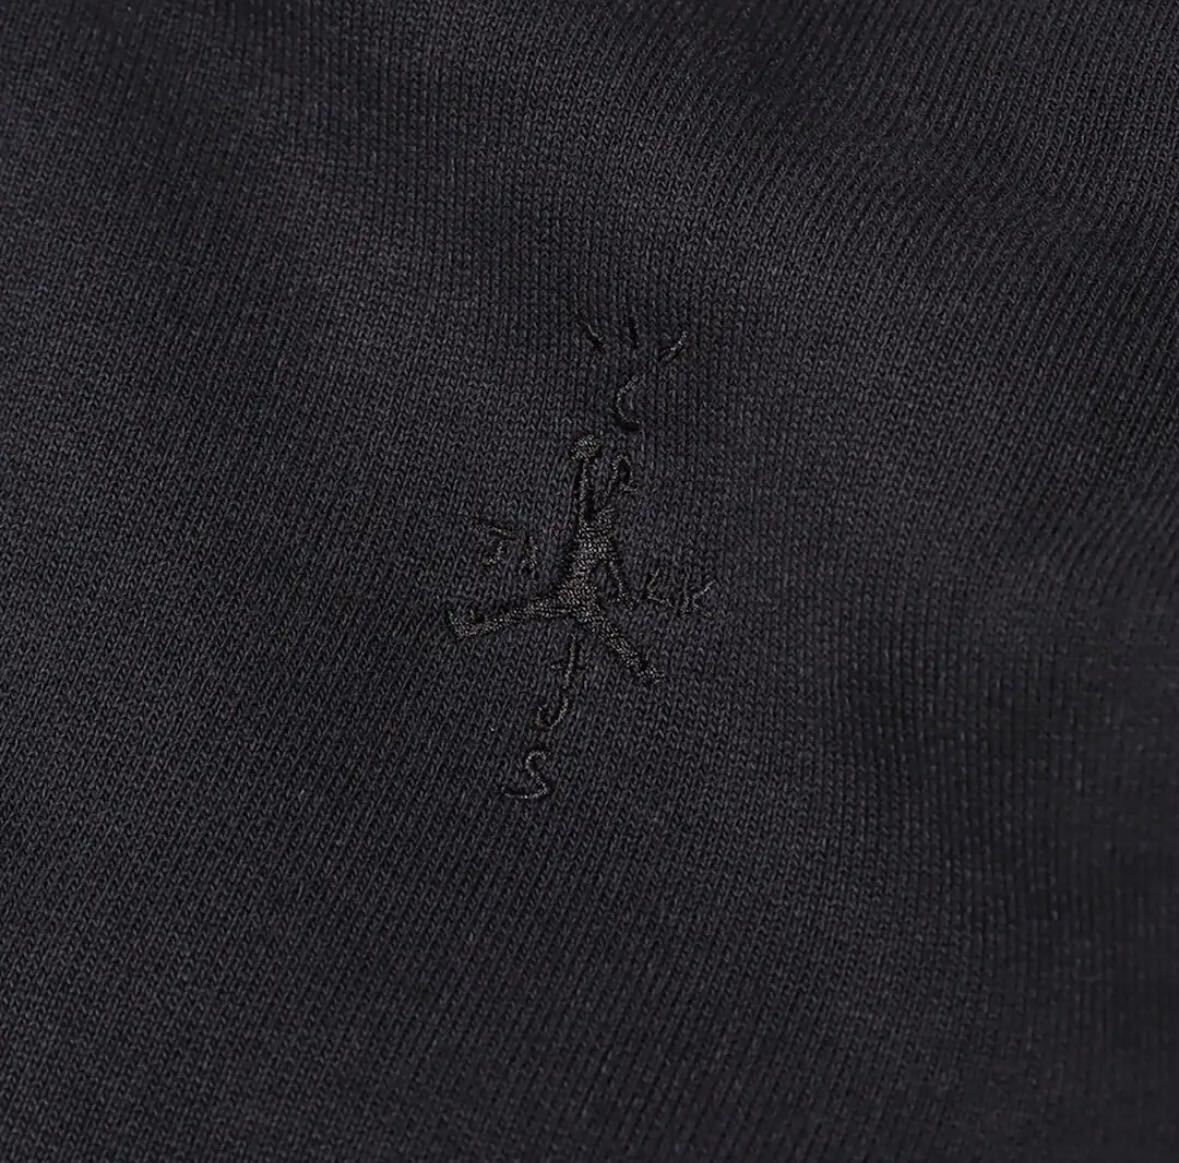 【送料無料】Nike Jordan x Travis Scott Men's Full-Zip Hoodie Black フルジップパーカー M 新品_画像4